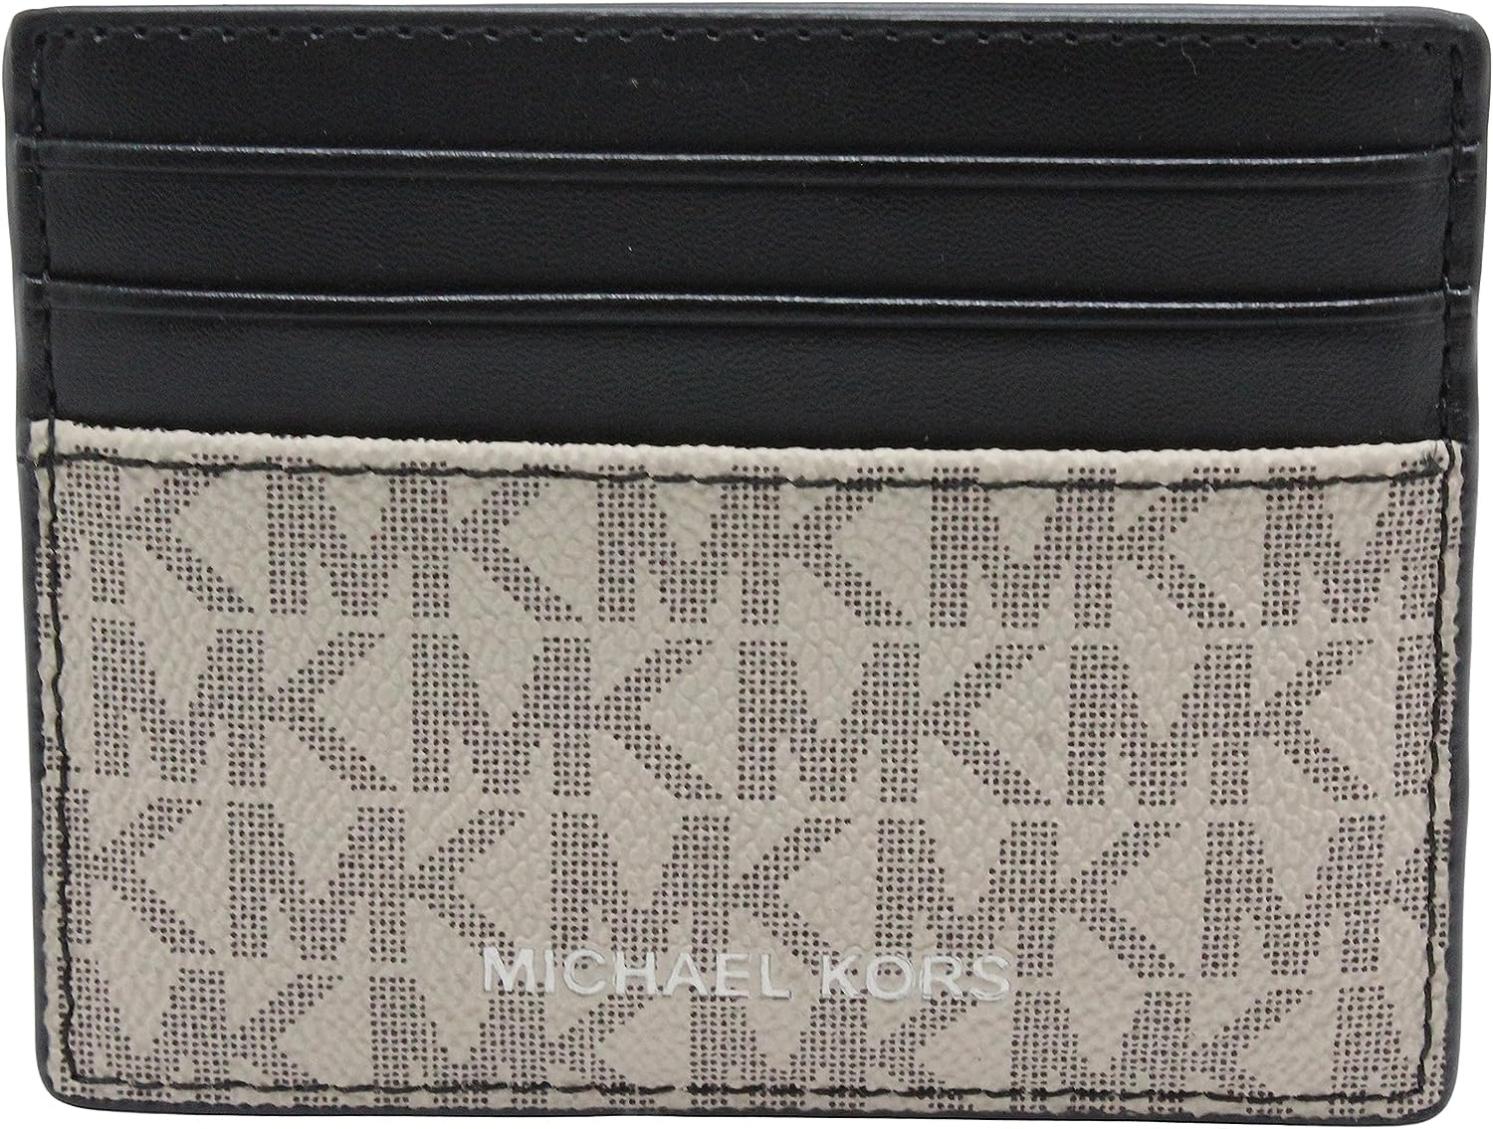 Michael Kors Men's Cooper Tall Card Case Wallet Hemp/Brown